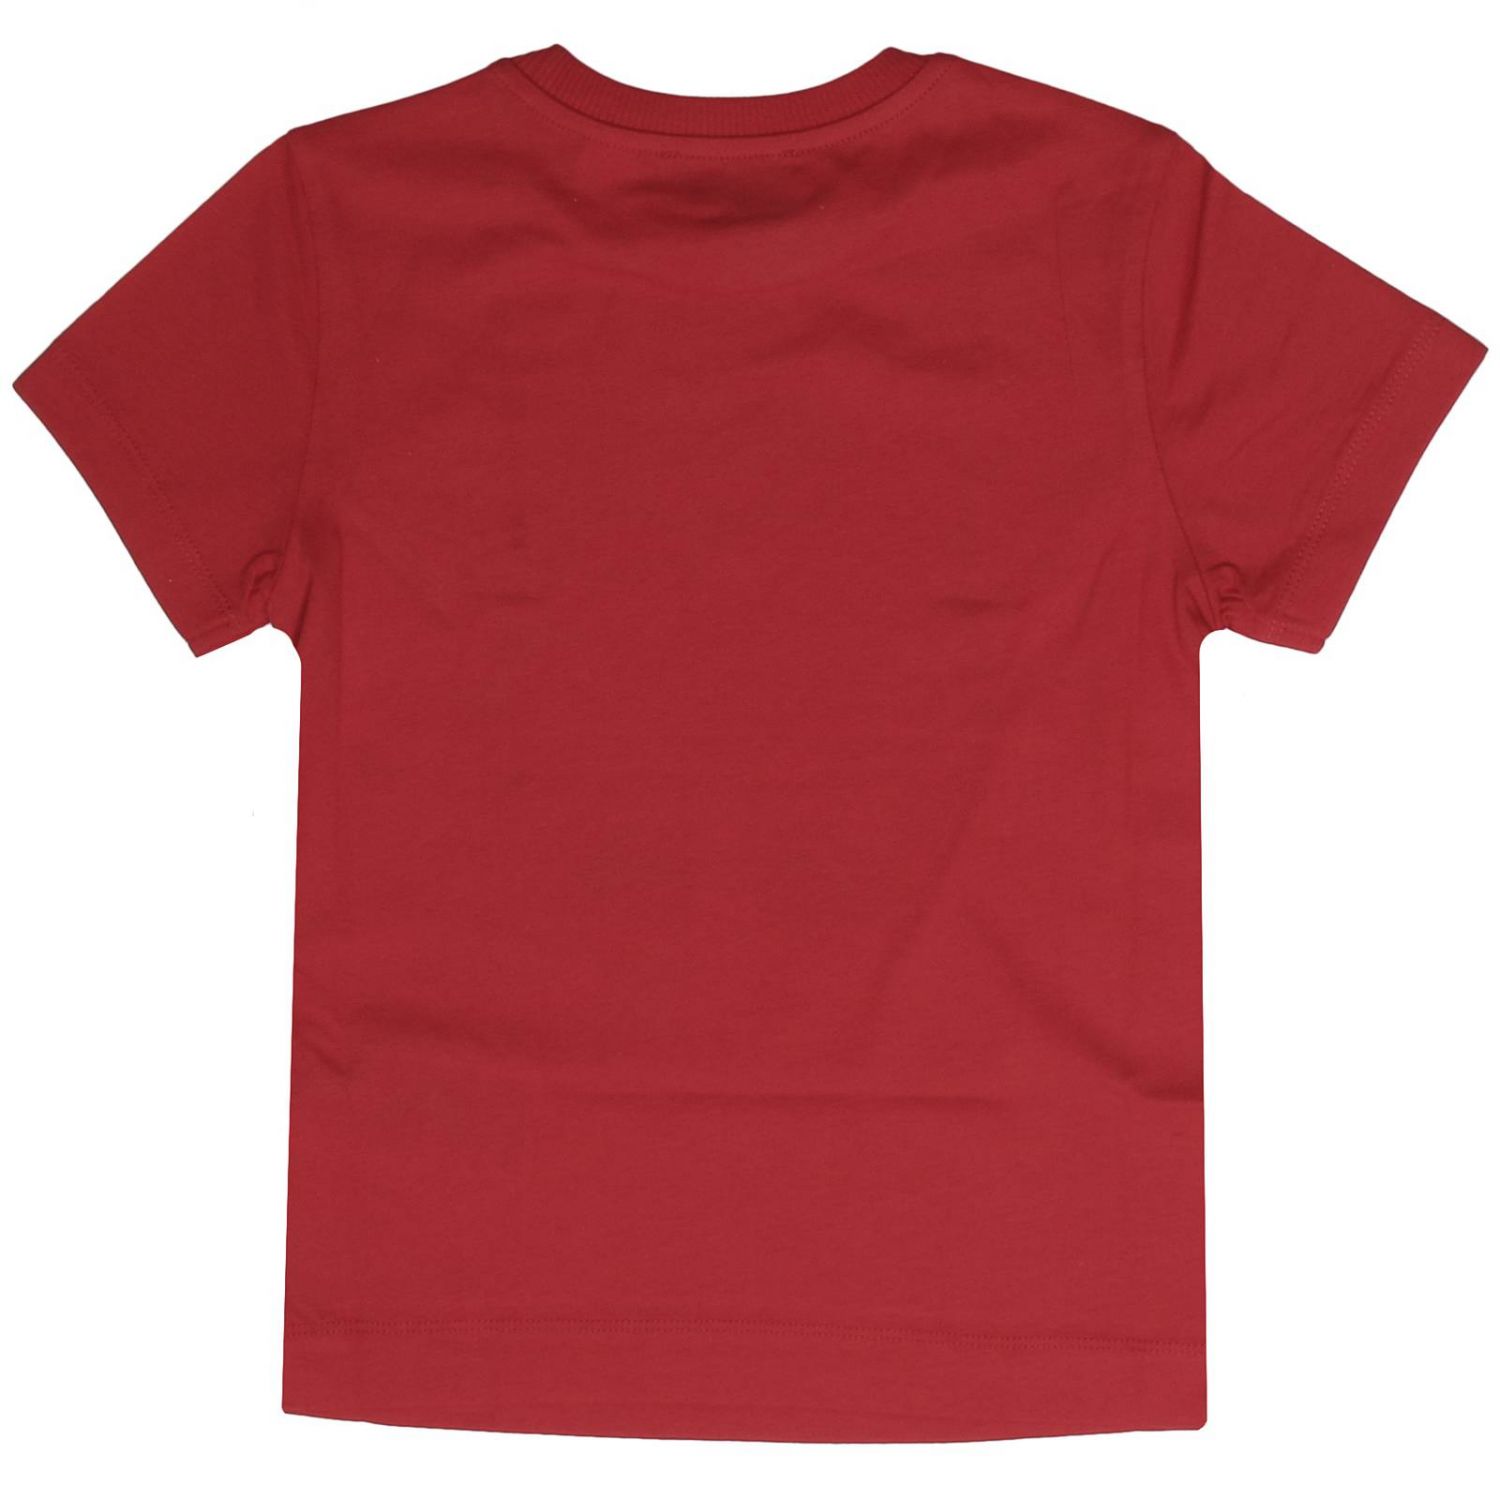 T-shirt kids Moschino Kid | T-Shirt Moschino Kid Kids Red | T-Shirt ...